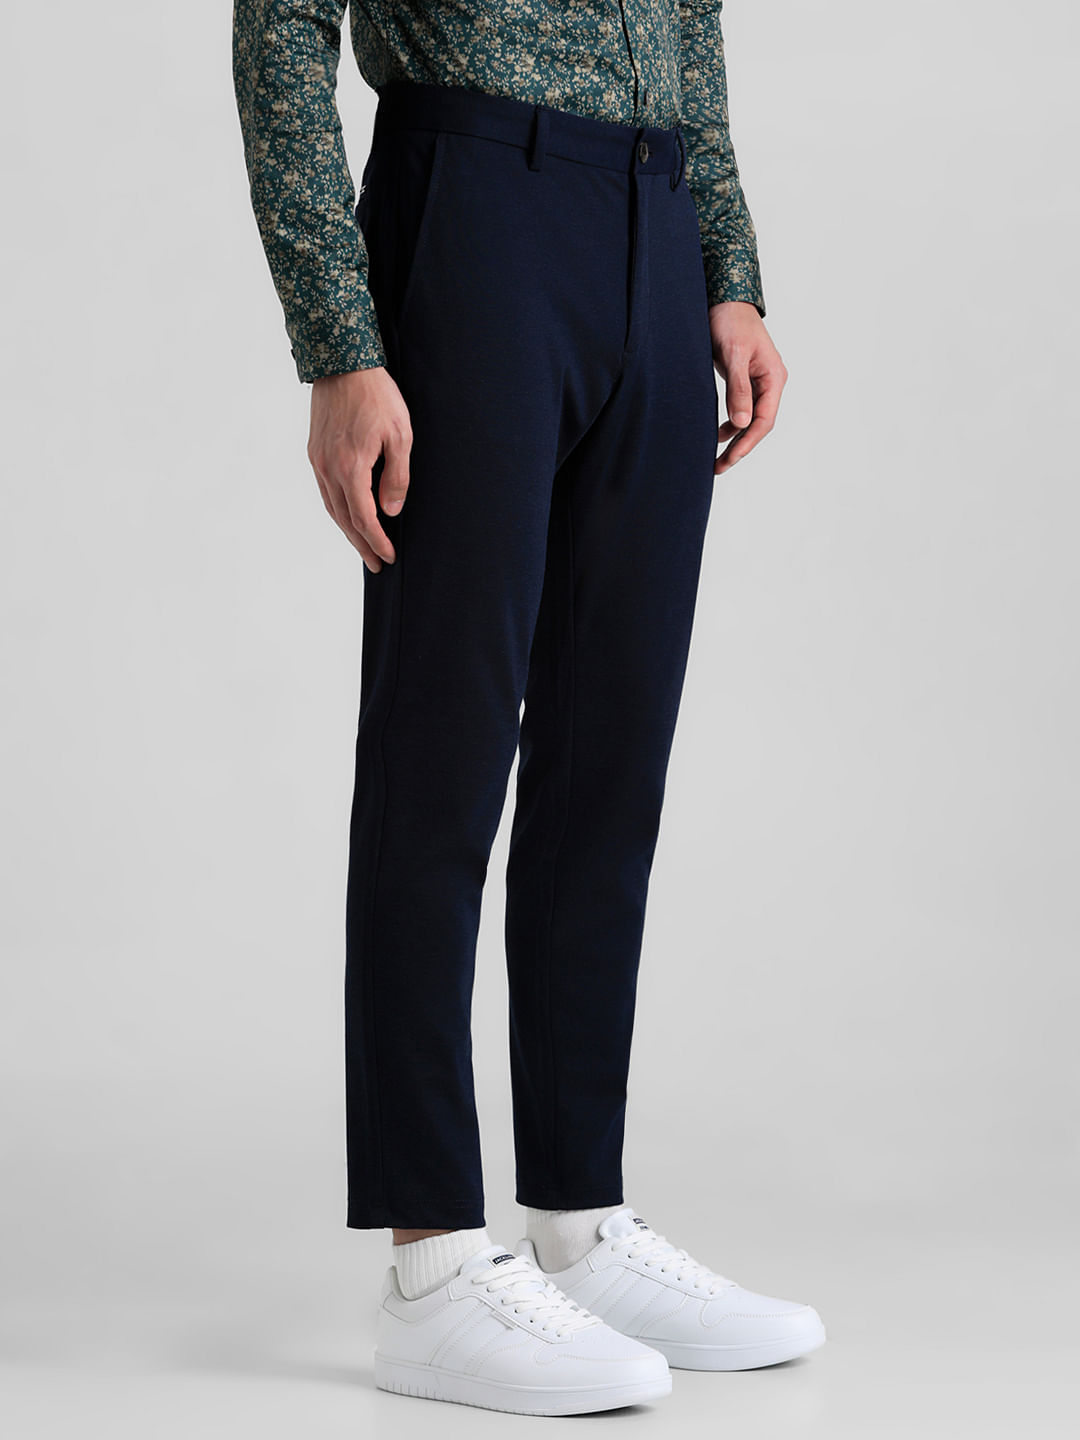 Buy Van Heusen Navy Trousers Online - 611188 | Van Heusen